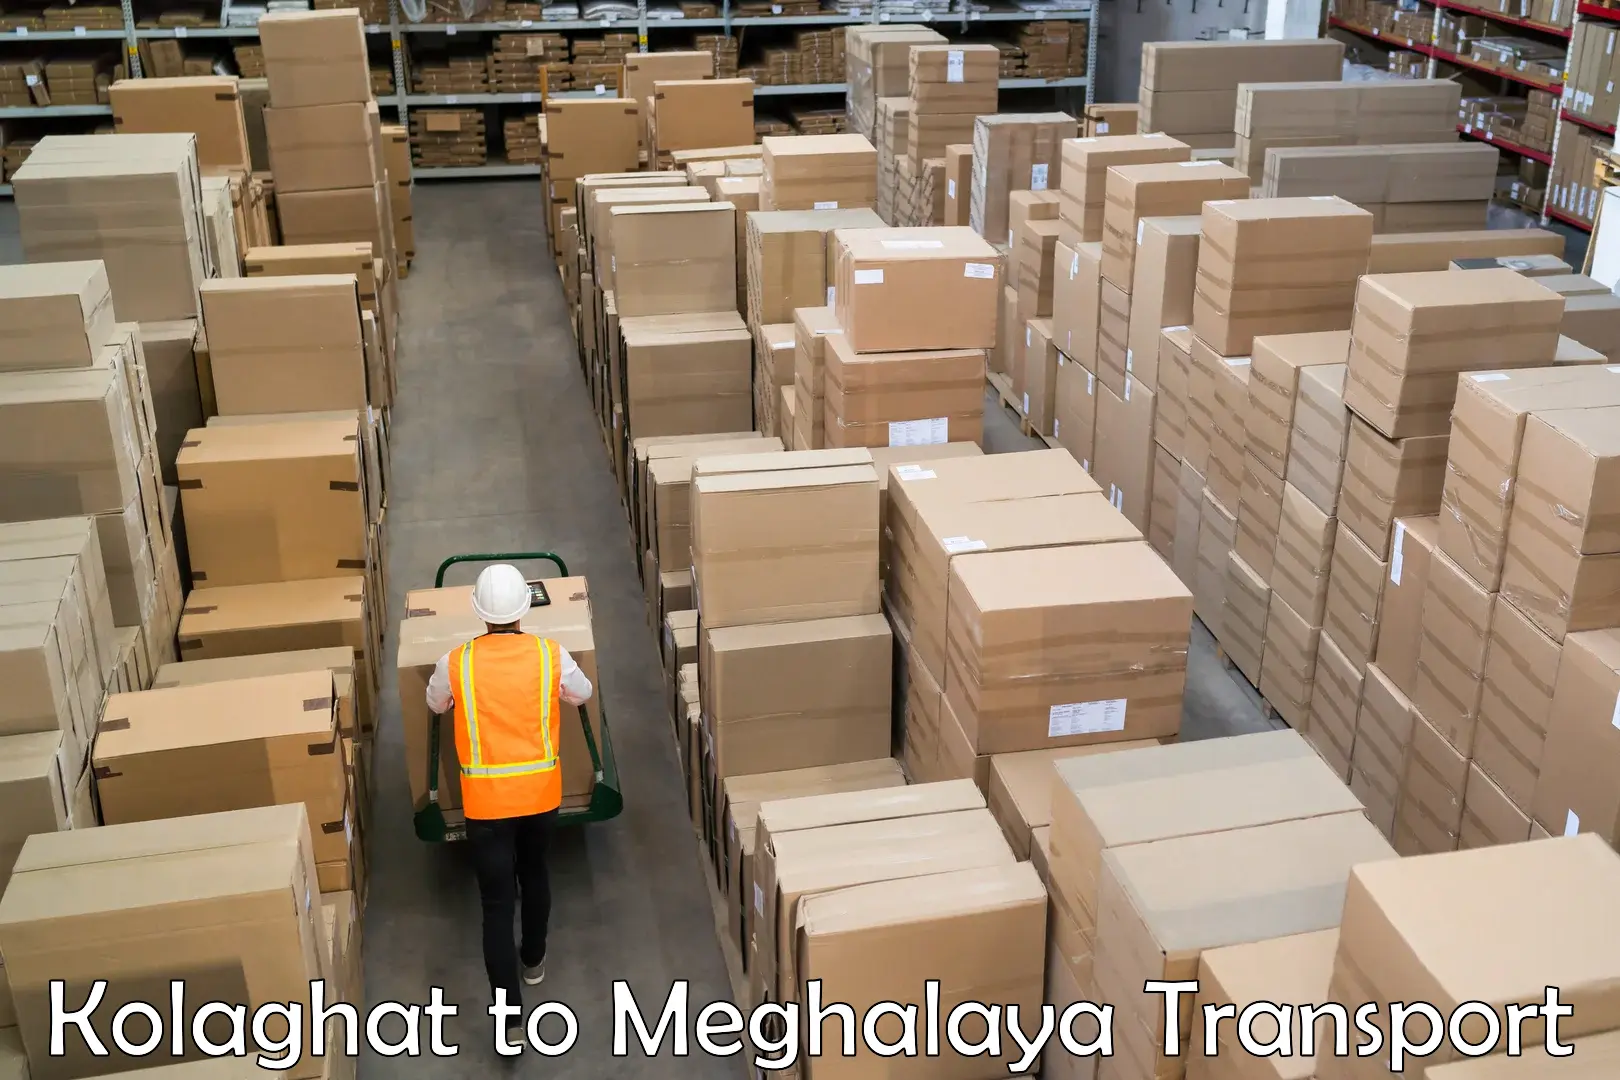 Shipping partner Kolaghat to Cherrapunji